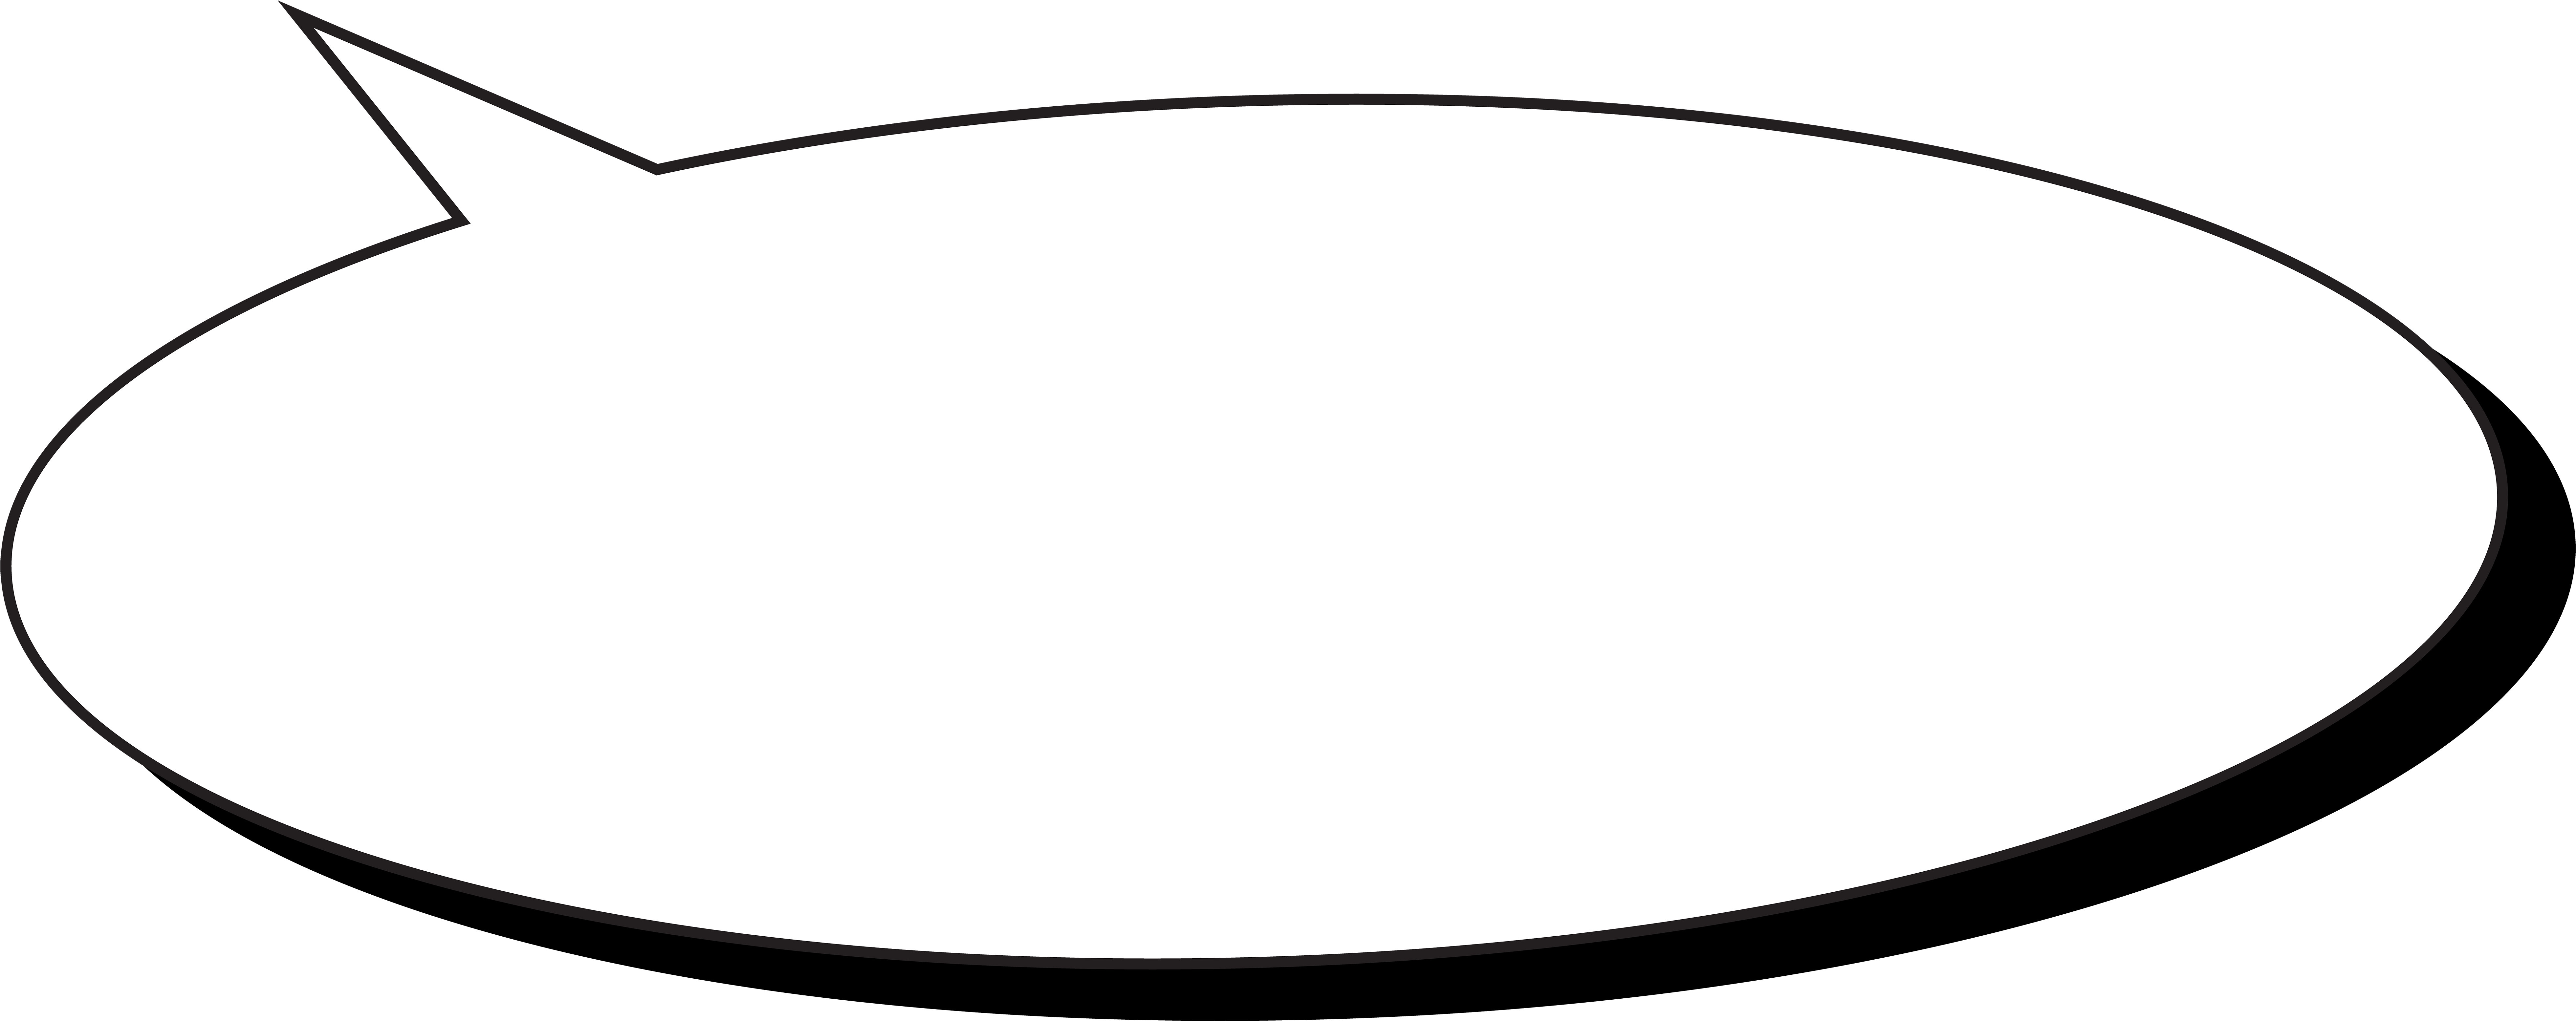 Comic Speech Bubble Transparent Png Clip Art Image - Circle (8000x3280)